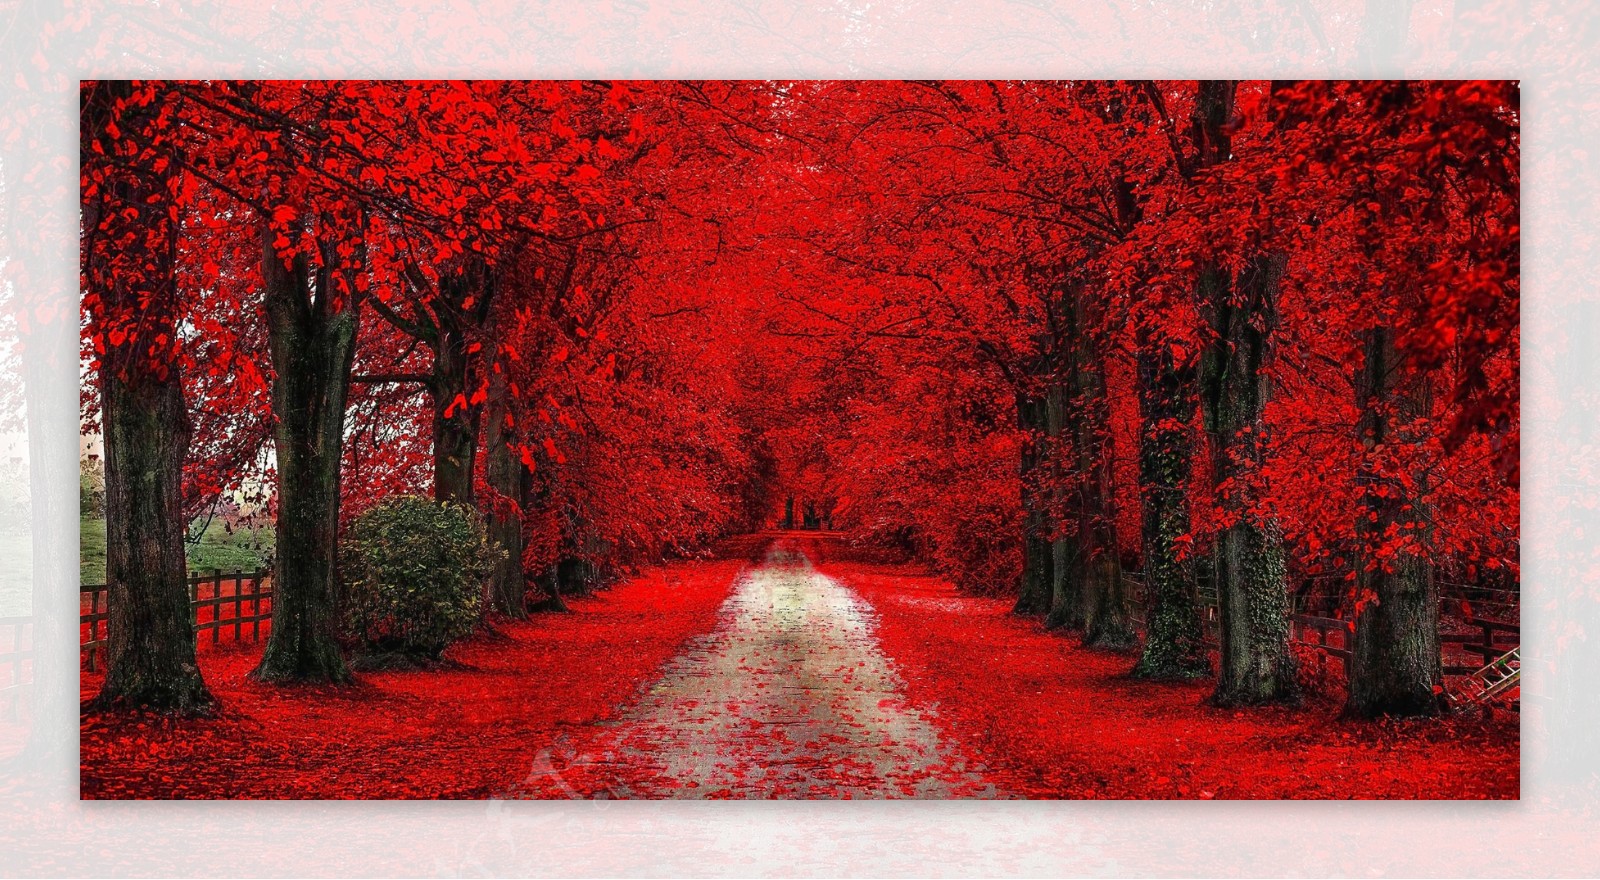 红色树林小路图片素材